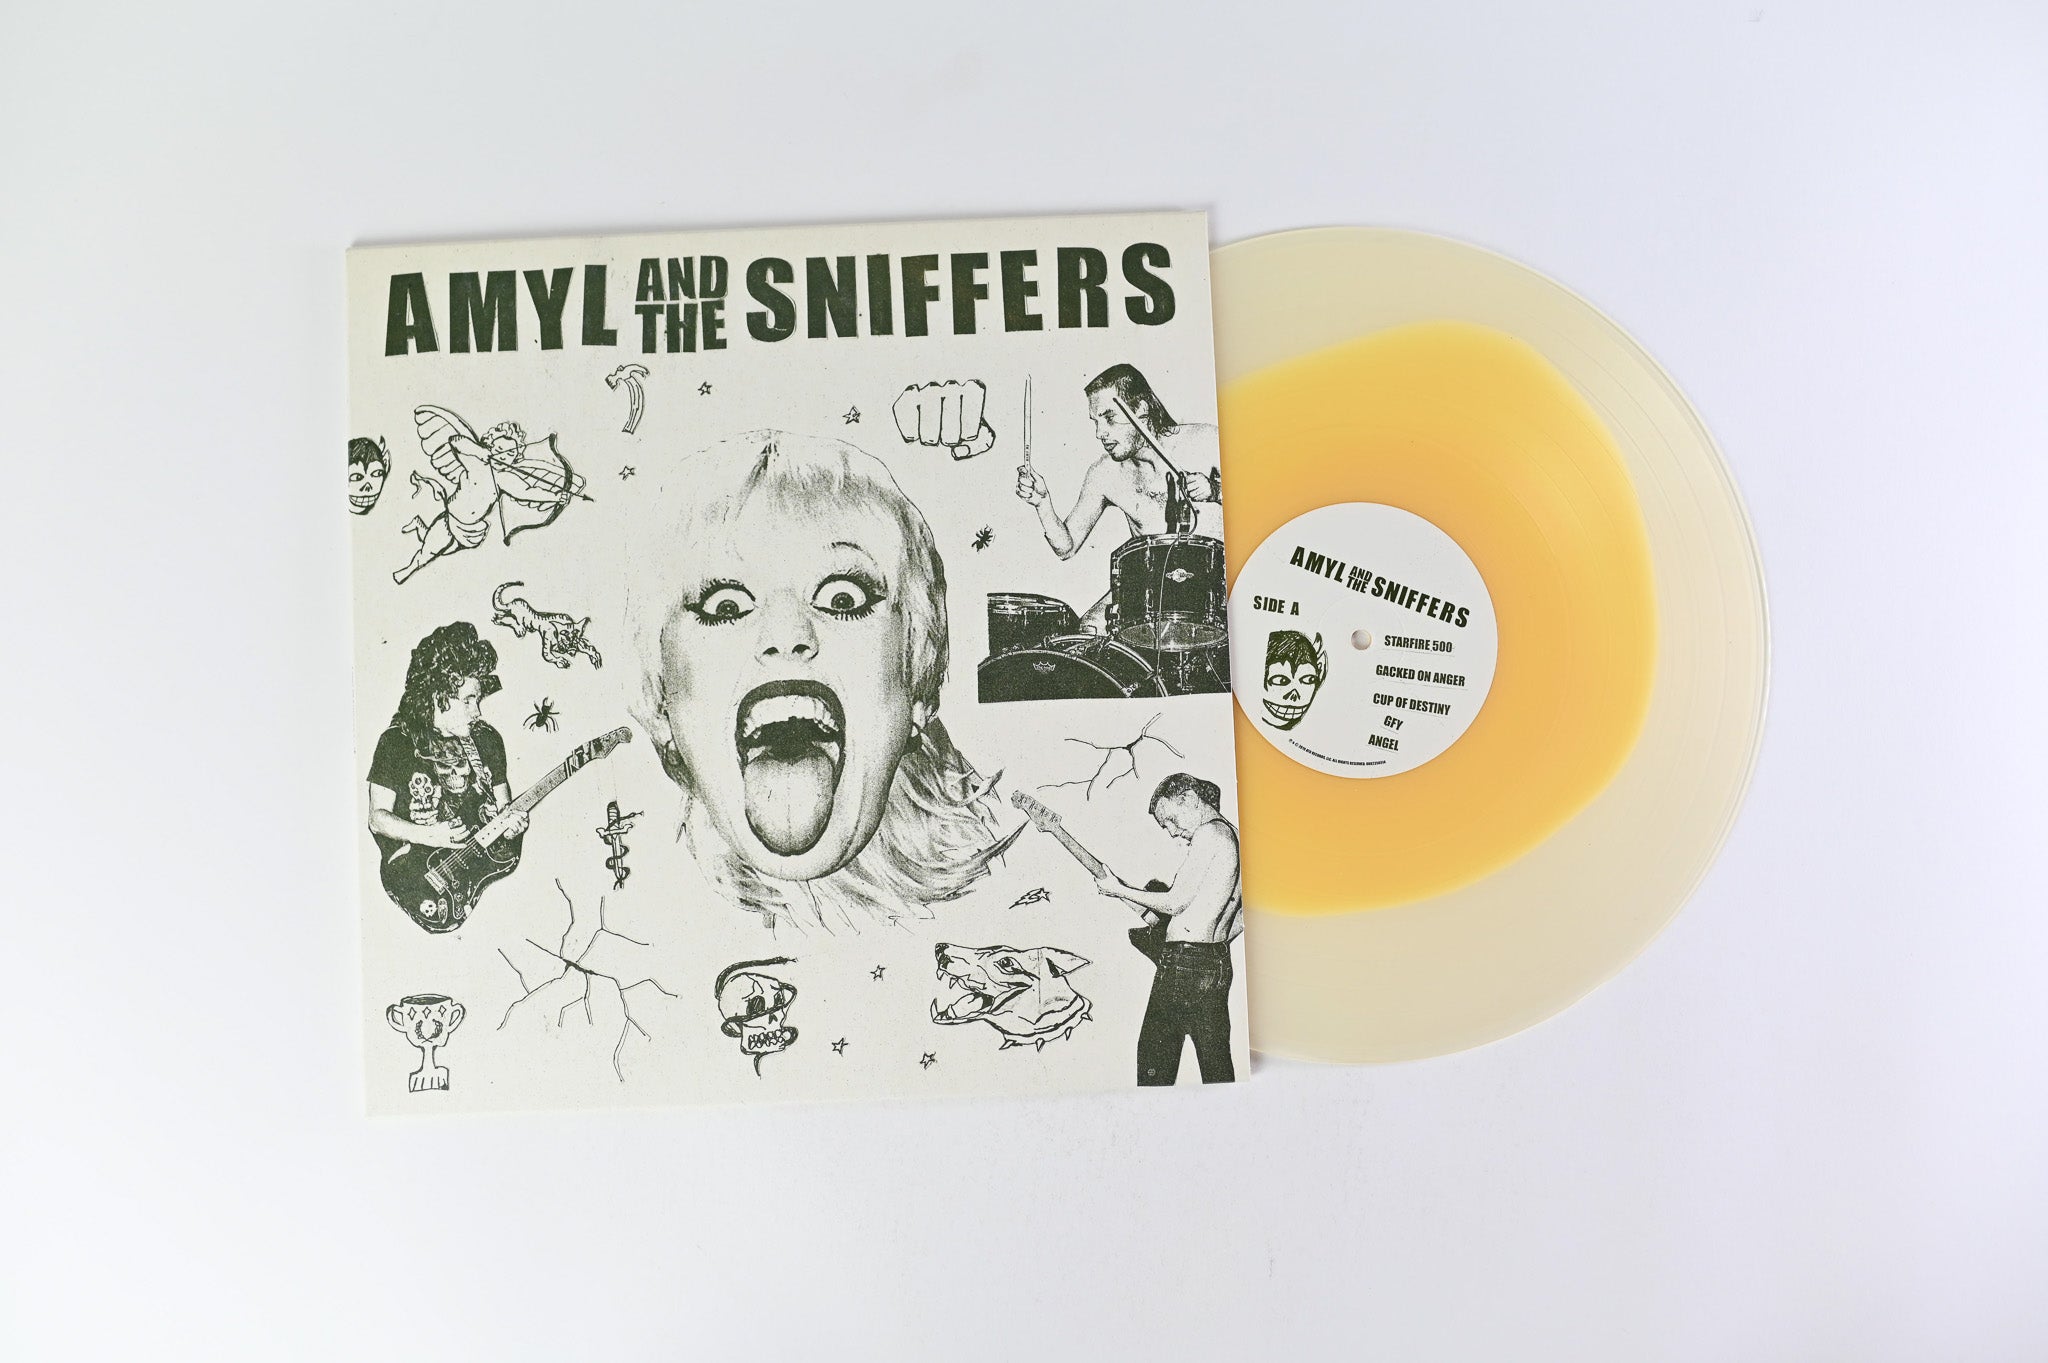 Amyl And The Sniffers - Amyl And The Sniffers on Flightless/ATO Records Egg Vinyl